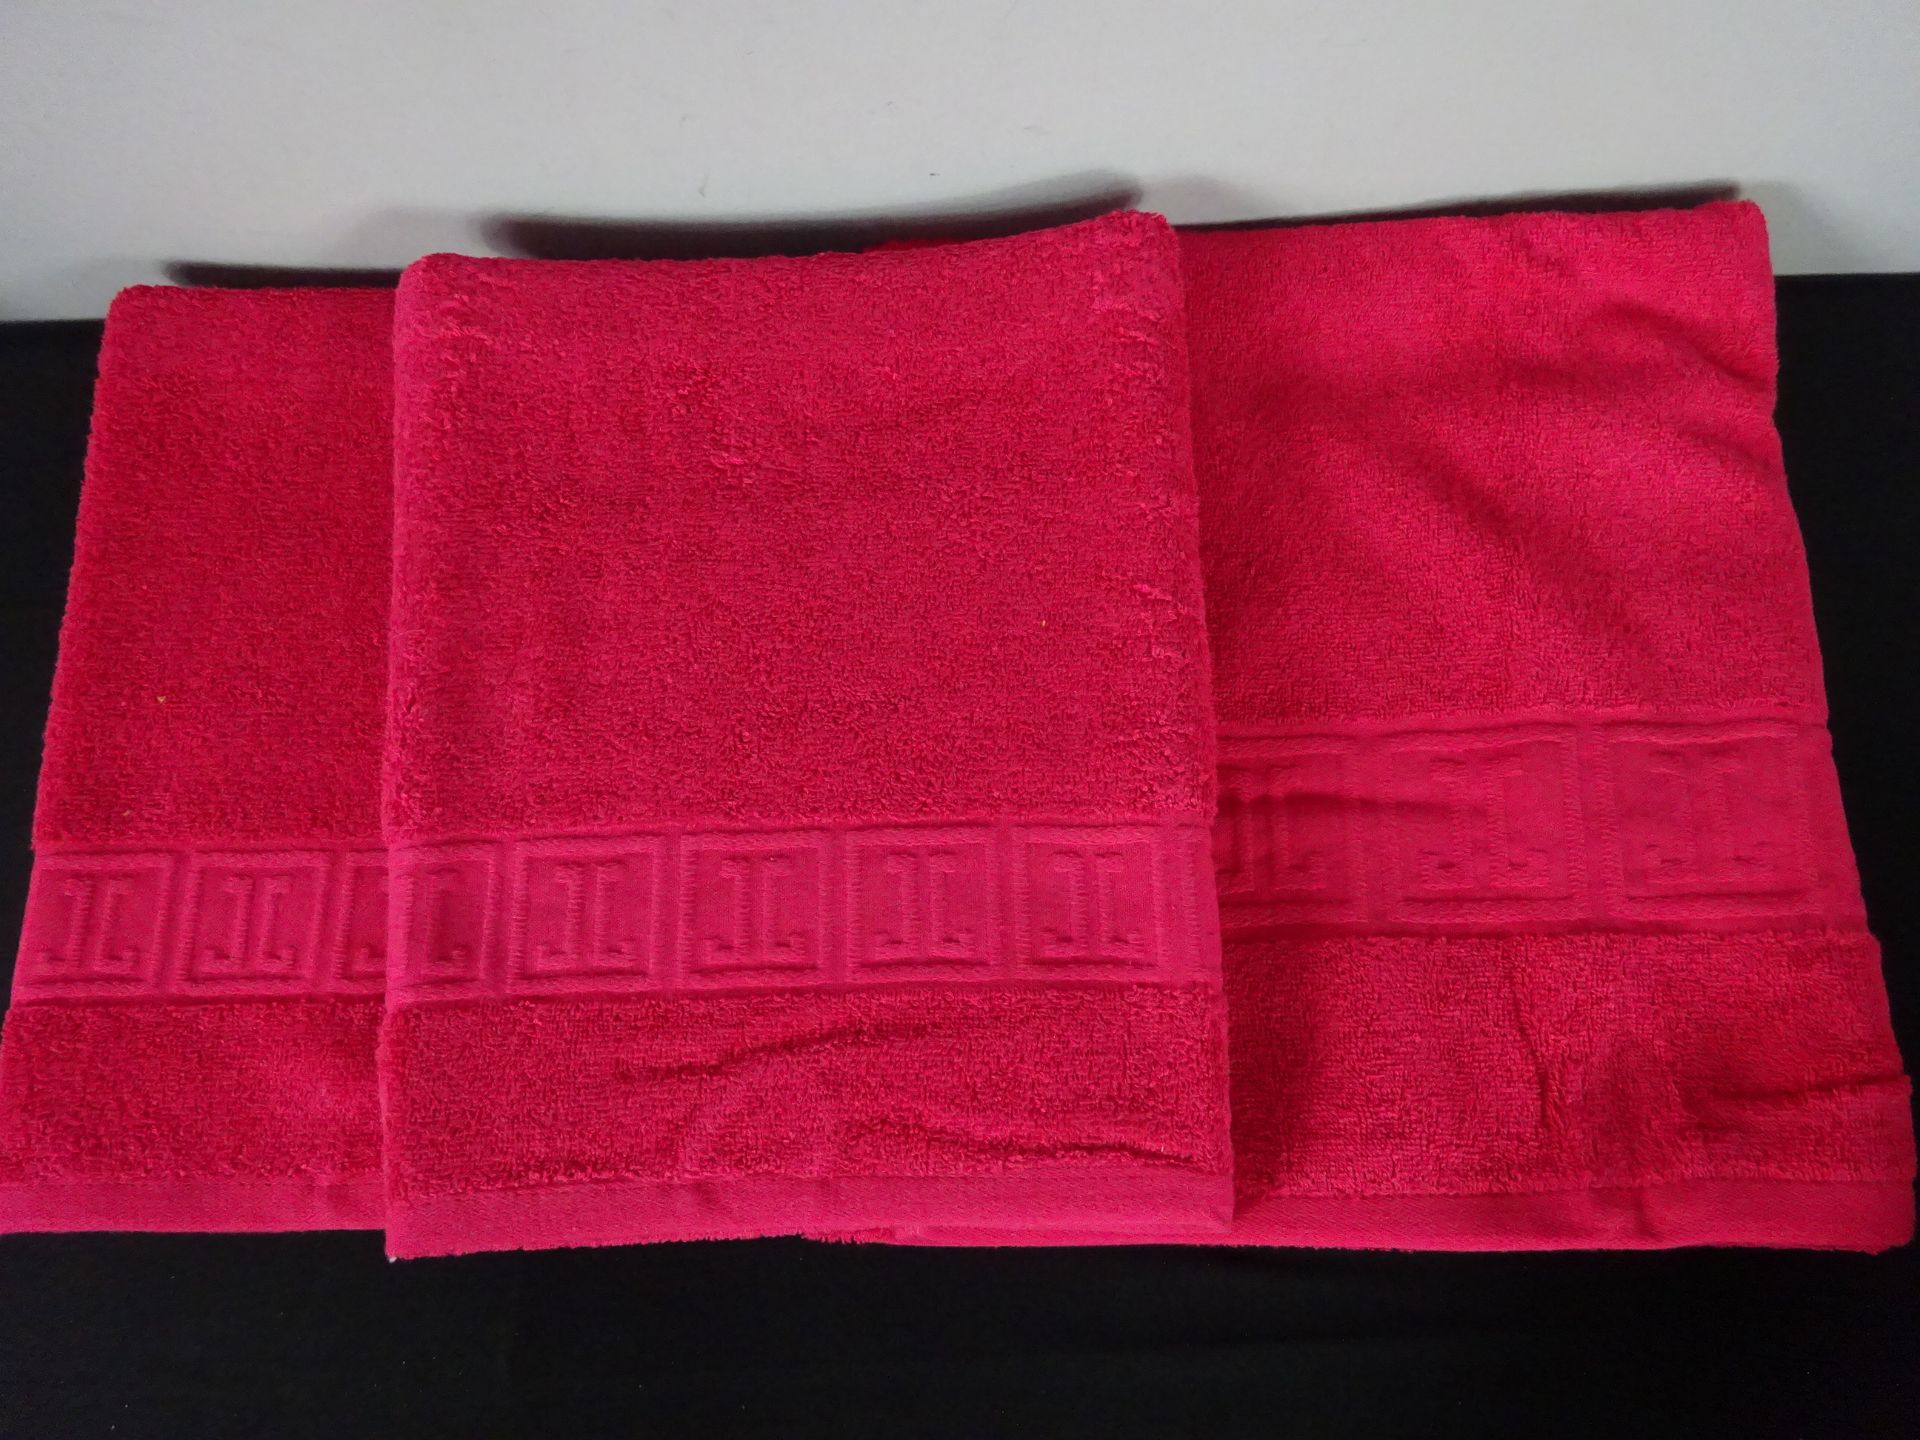 New 100% Cotton 70 x 140cm Bath Towel & Two 50 x 100cm Hand Towels